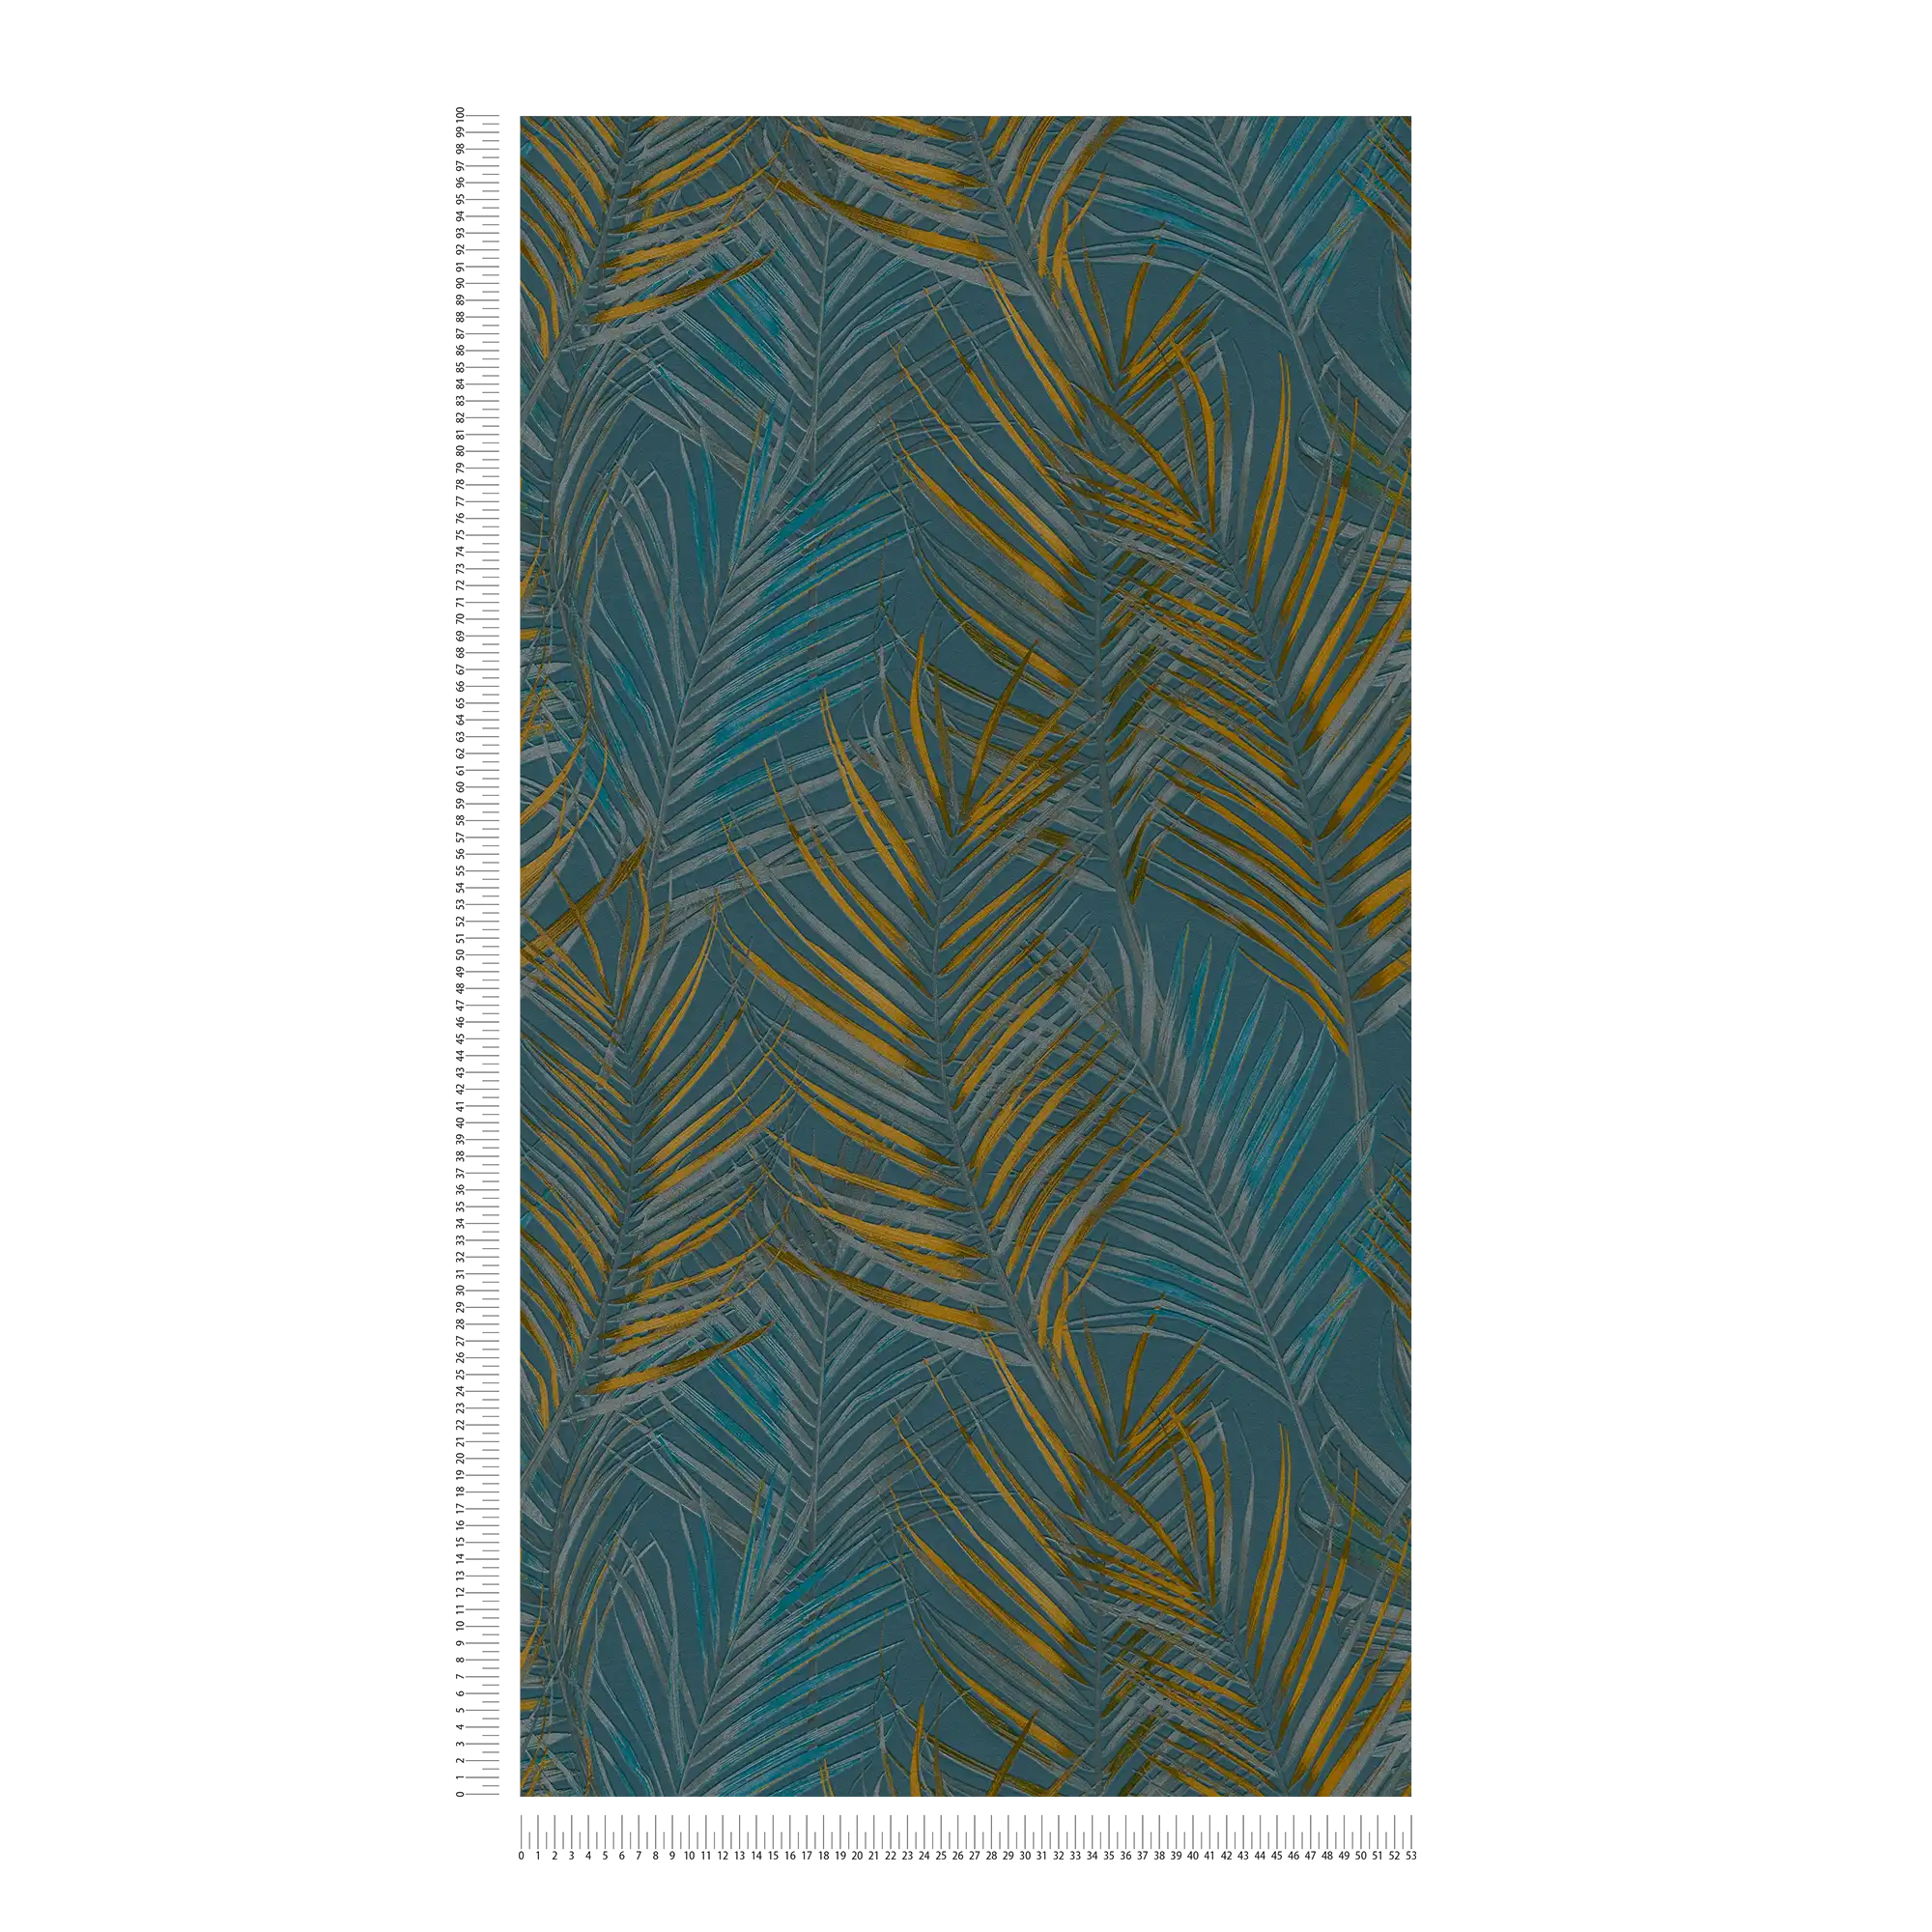             Carta da parati motivo giungla con foglie di palma - blu, giallo, petrolio
        